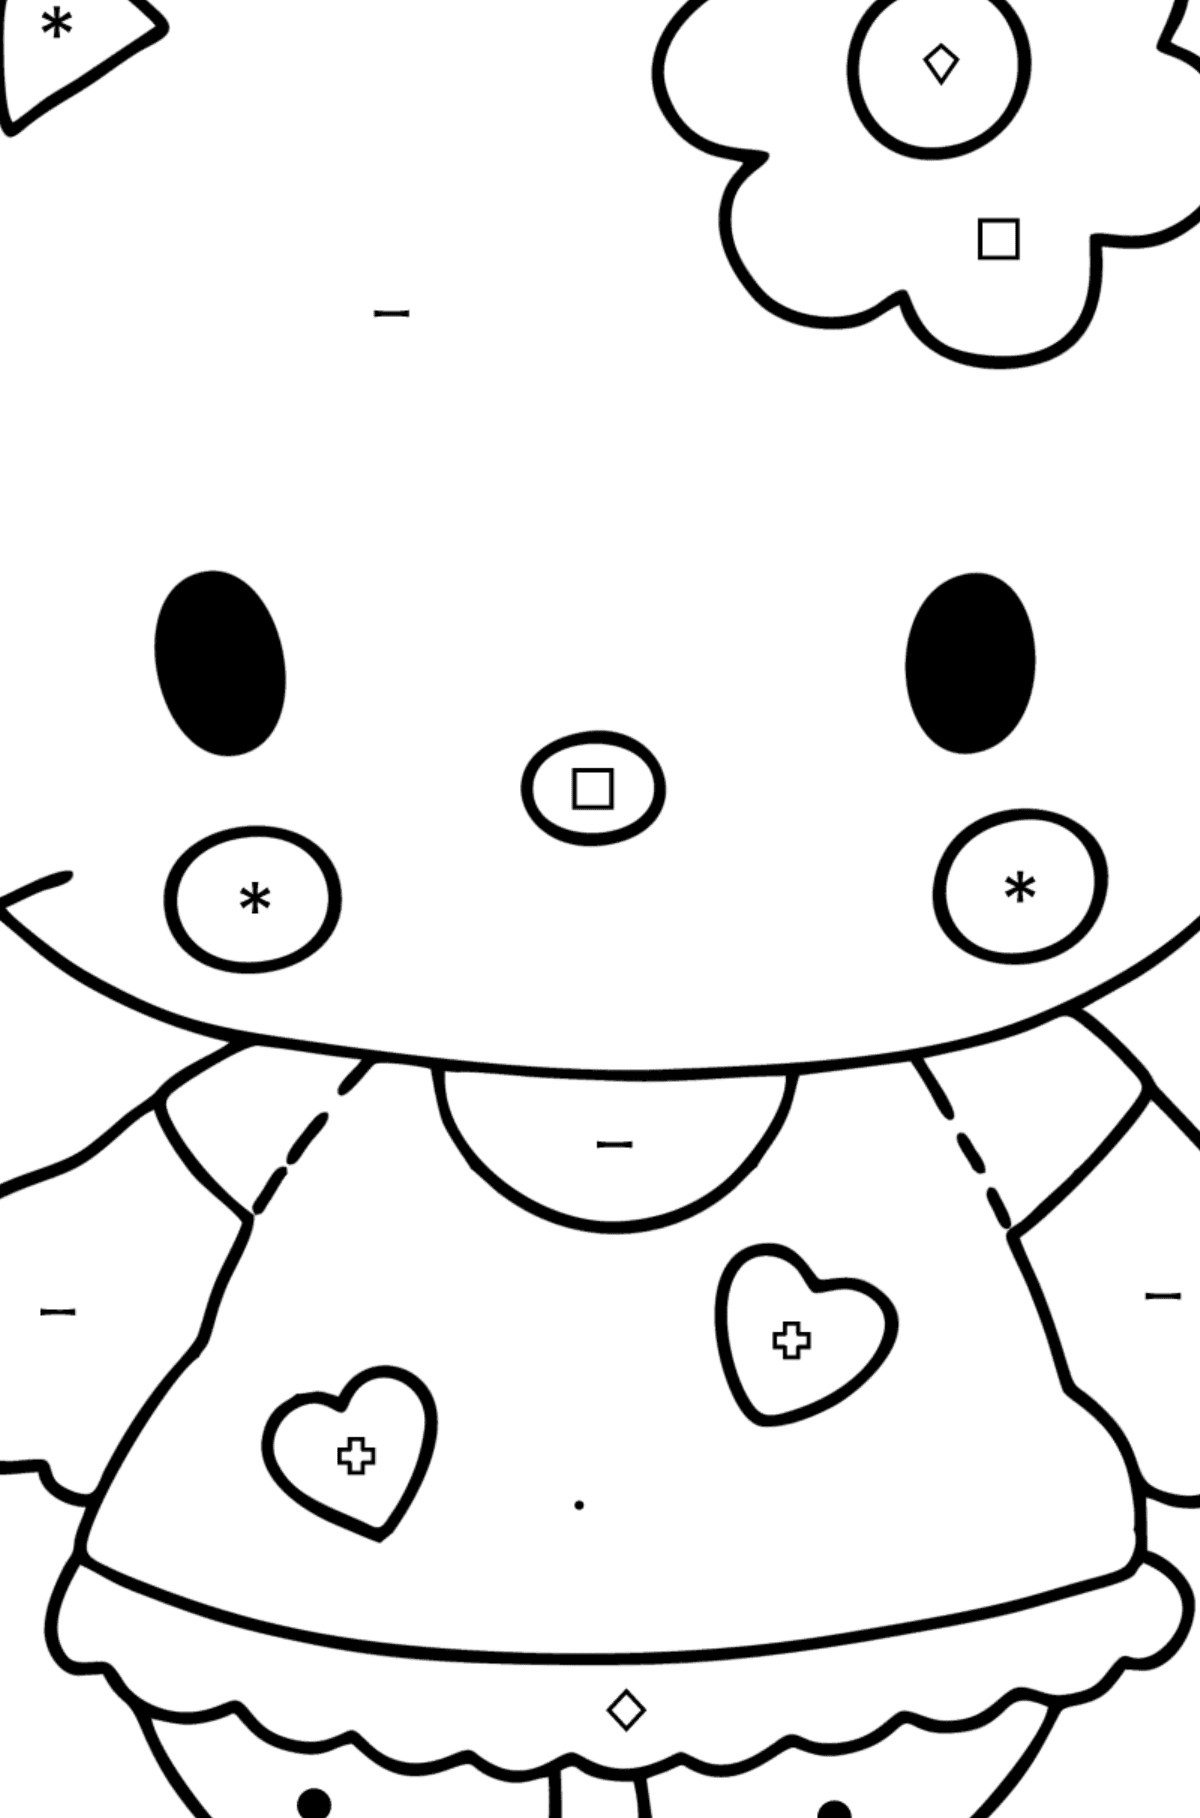 Boyama sayfası Hello Kitty - Sembollere ve Geometrik Şekillerle Boyama çocuklar için